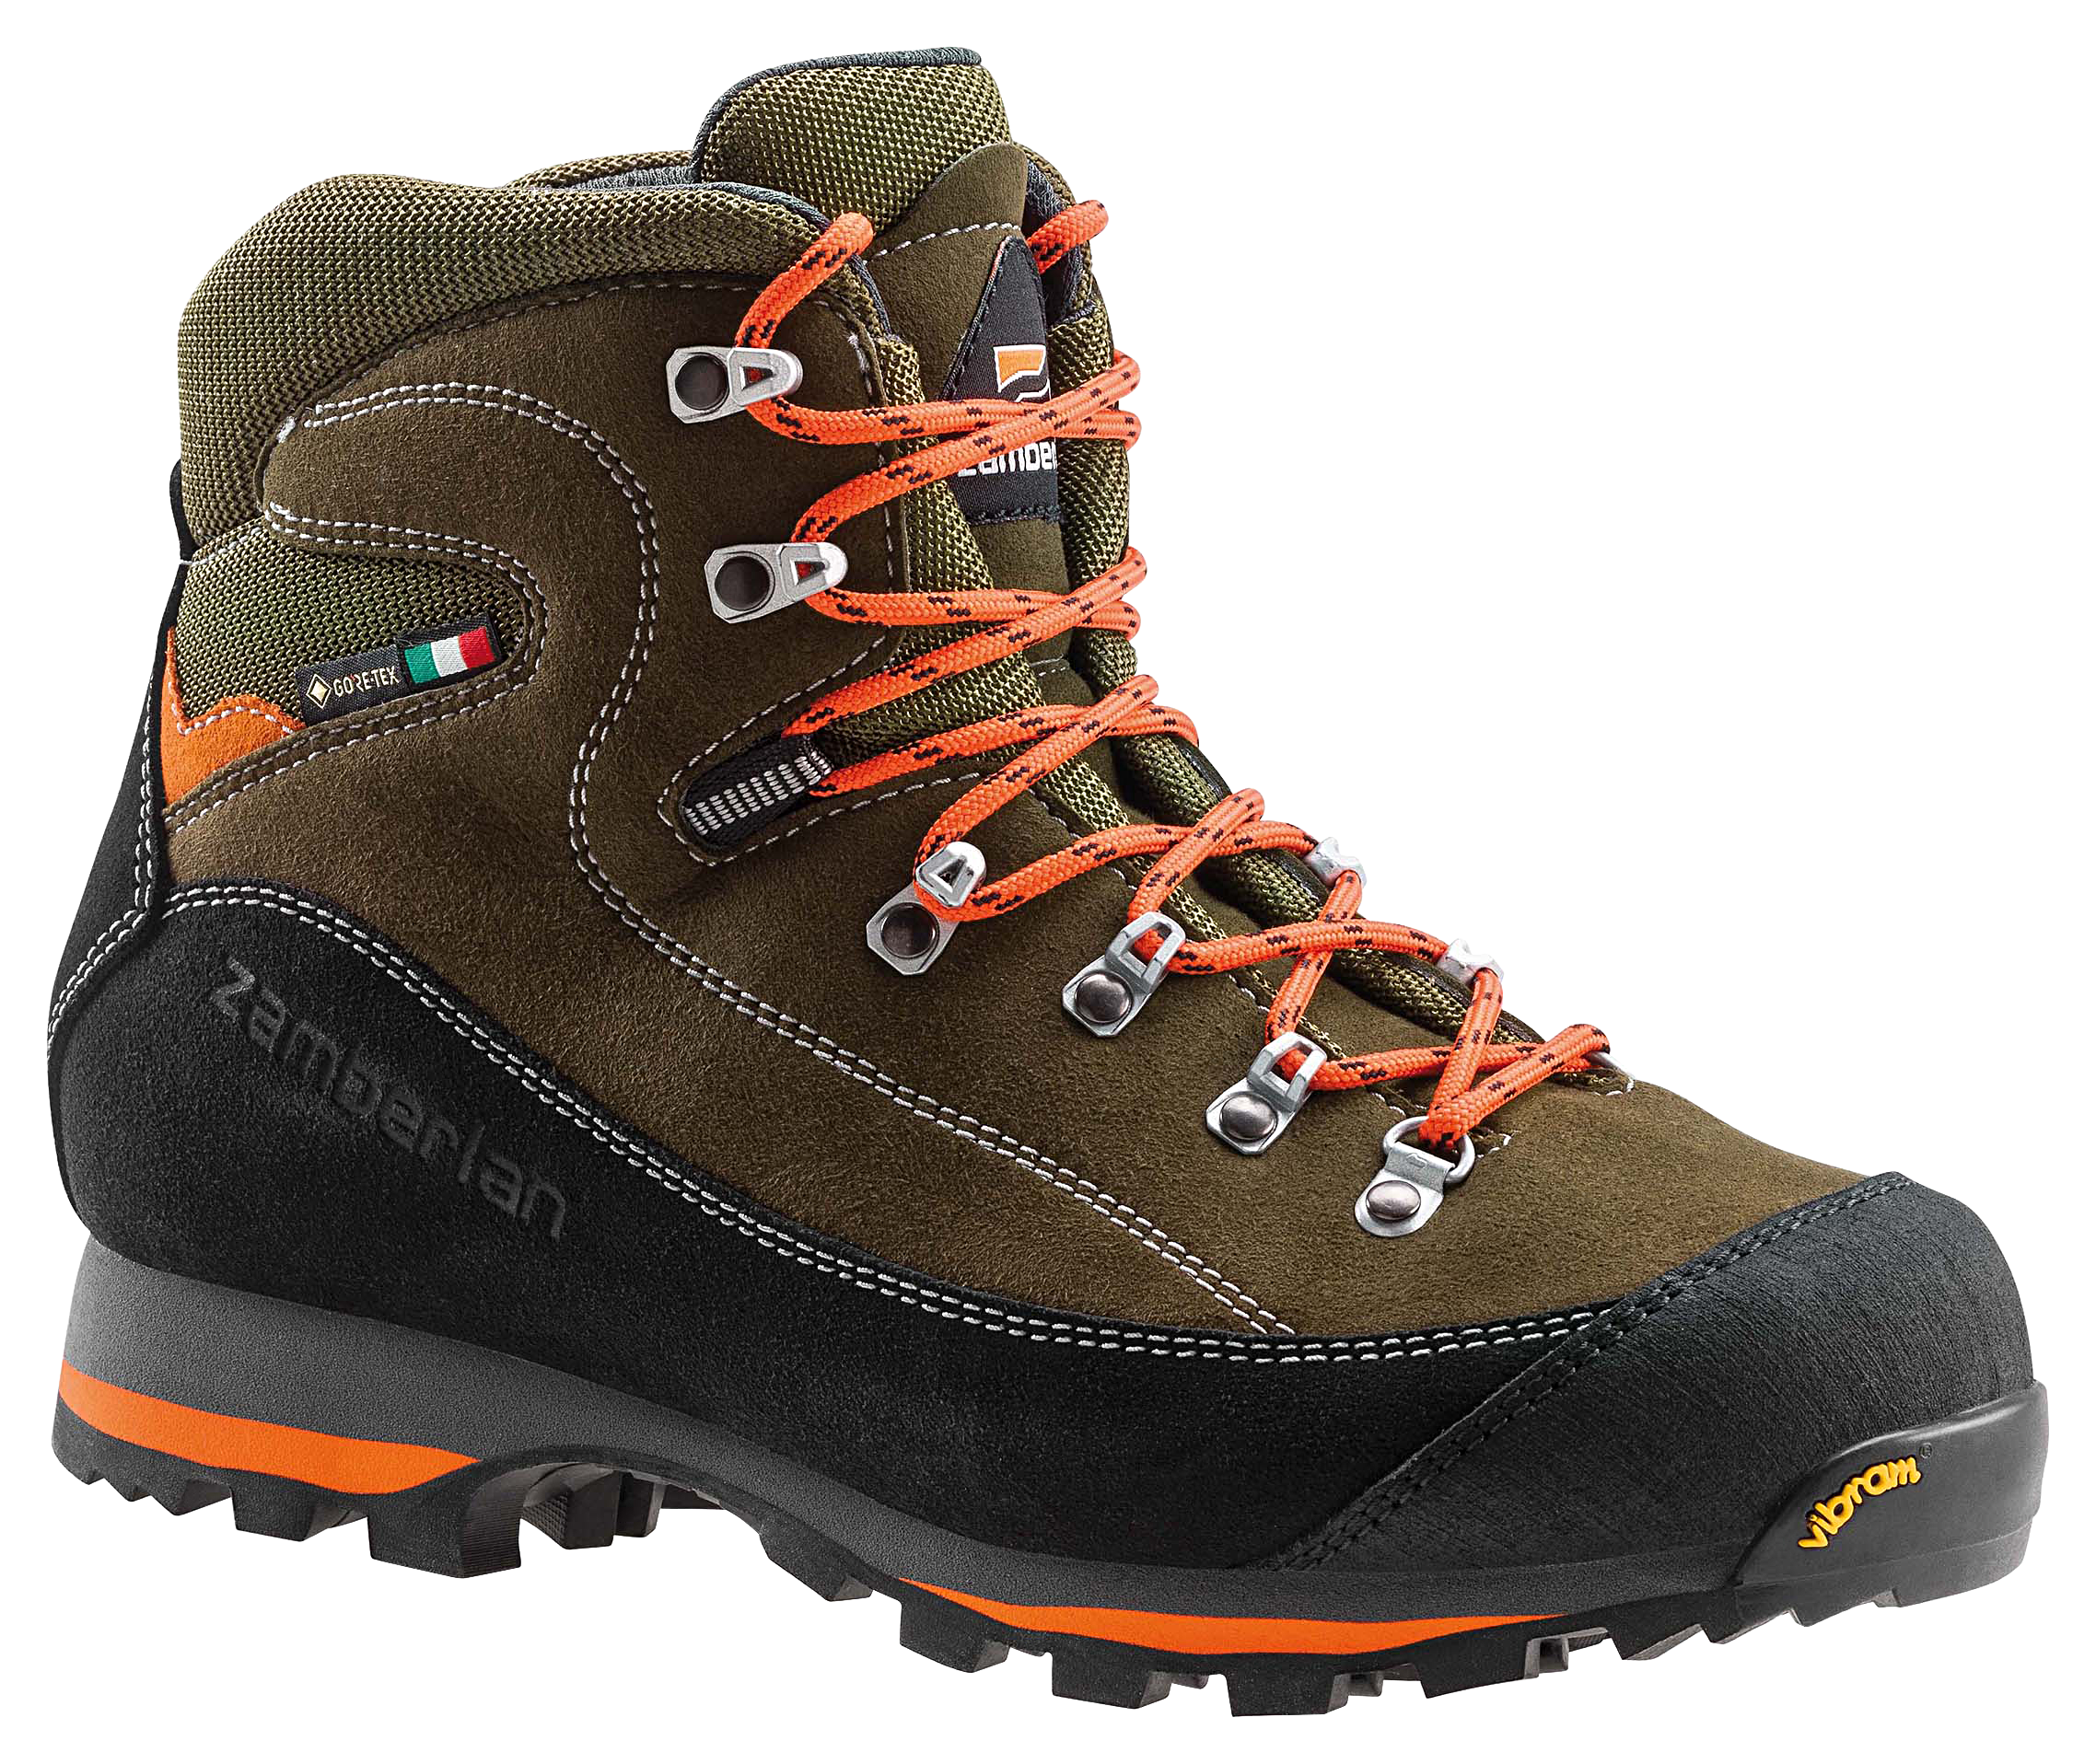 Zamberlan 700 Sierra GTX Waterproof Hunting Boots for Men - Forest - 13M